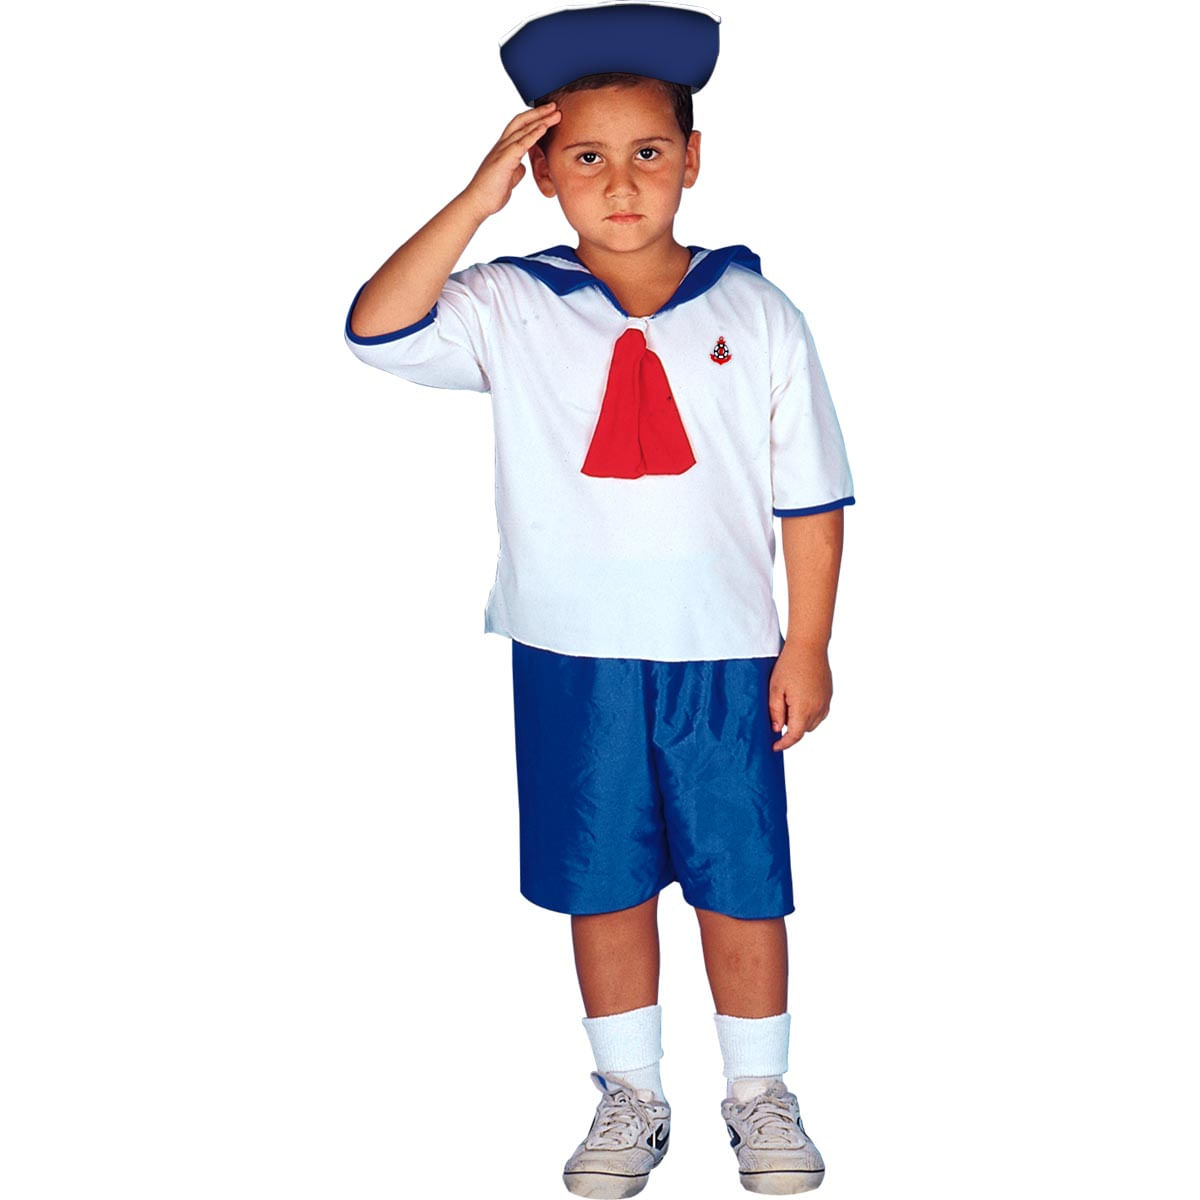 Fantasia Marinheiro Infantil P / UNICA